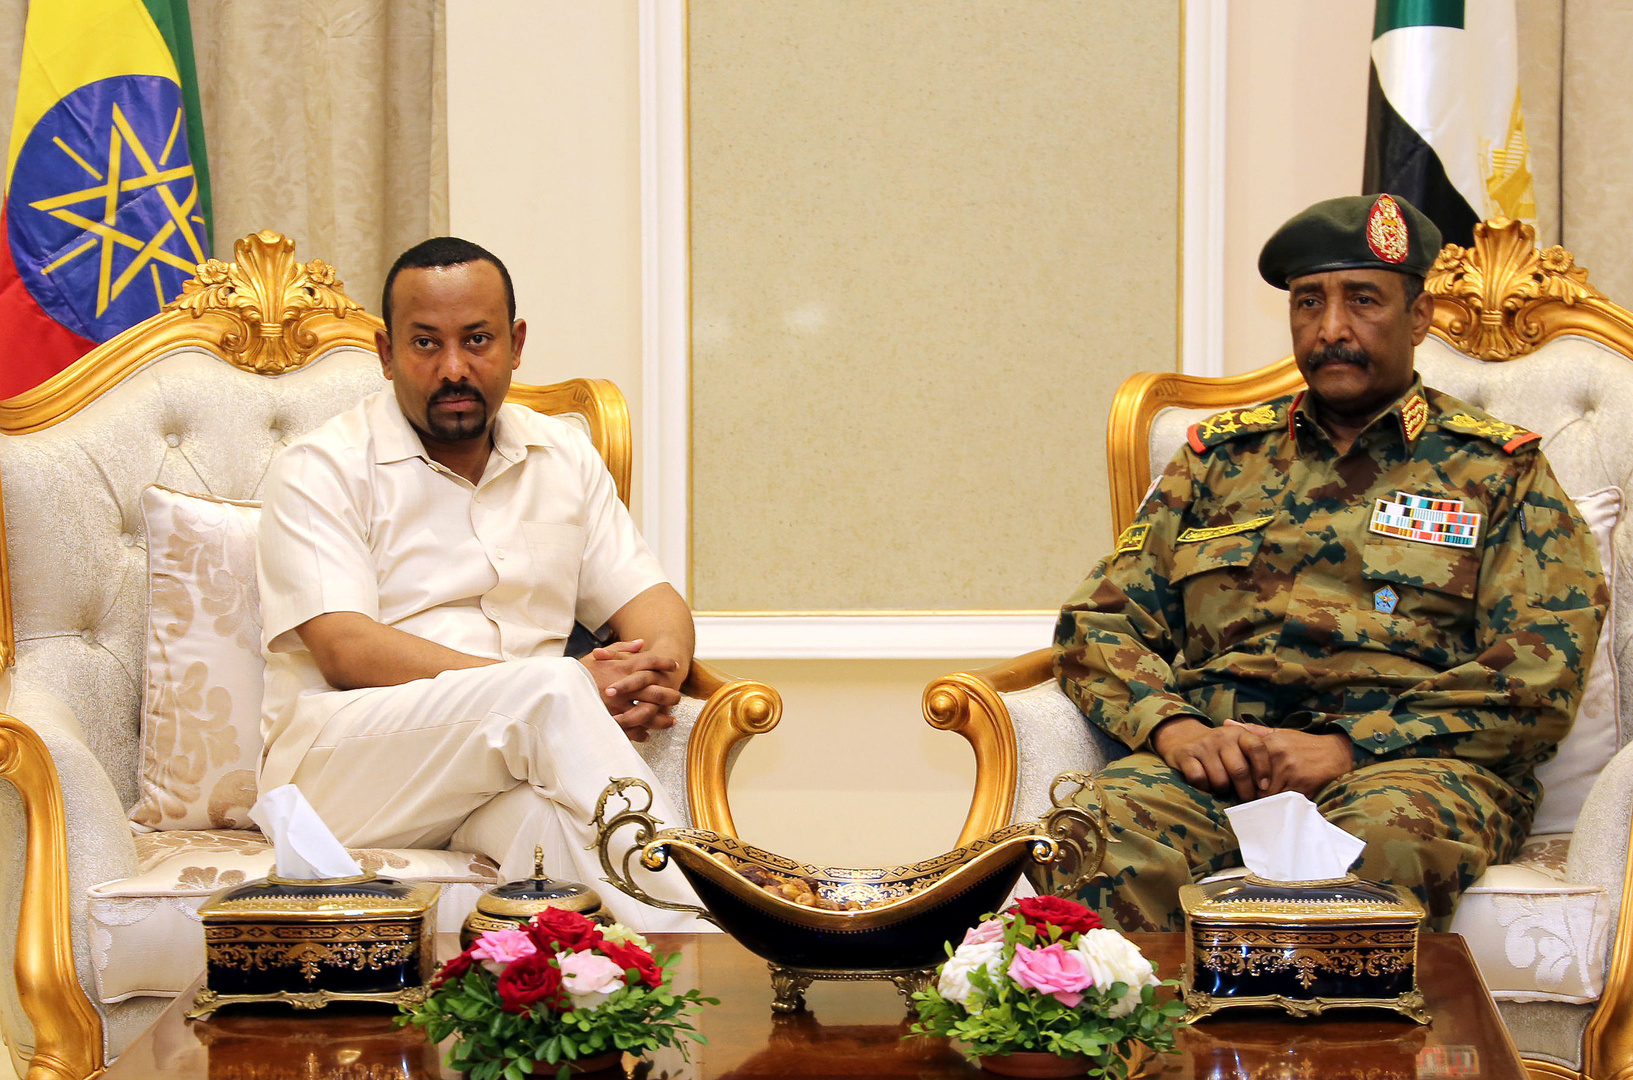 السودان يحذر إثيوبيا ويؤكد: جاهزون لأي احتمال لاستعادة القفشة ورد العدوان